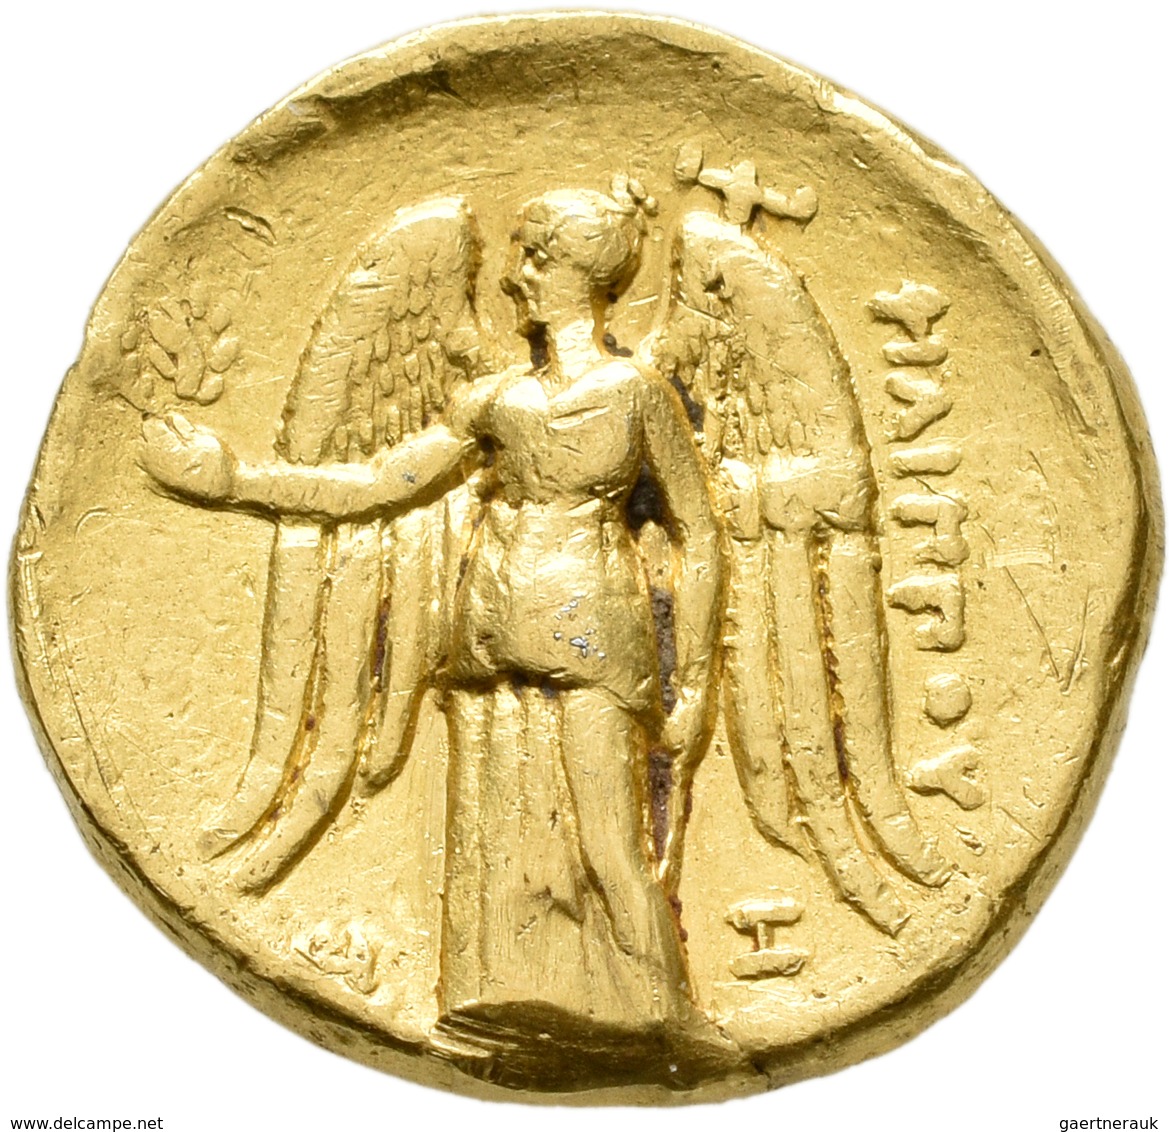 Makedonien - Könige: Philipp III. Arrchidaios 323-317 V.Chr: GOLD Stater, "Arados"? 323-316 V. C., V - Griechische Münzen